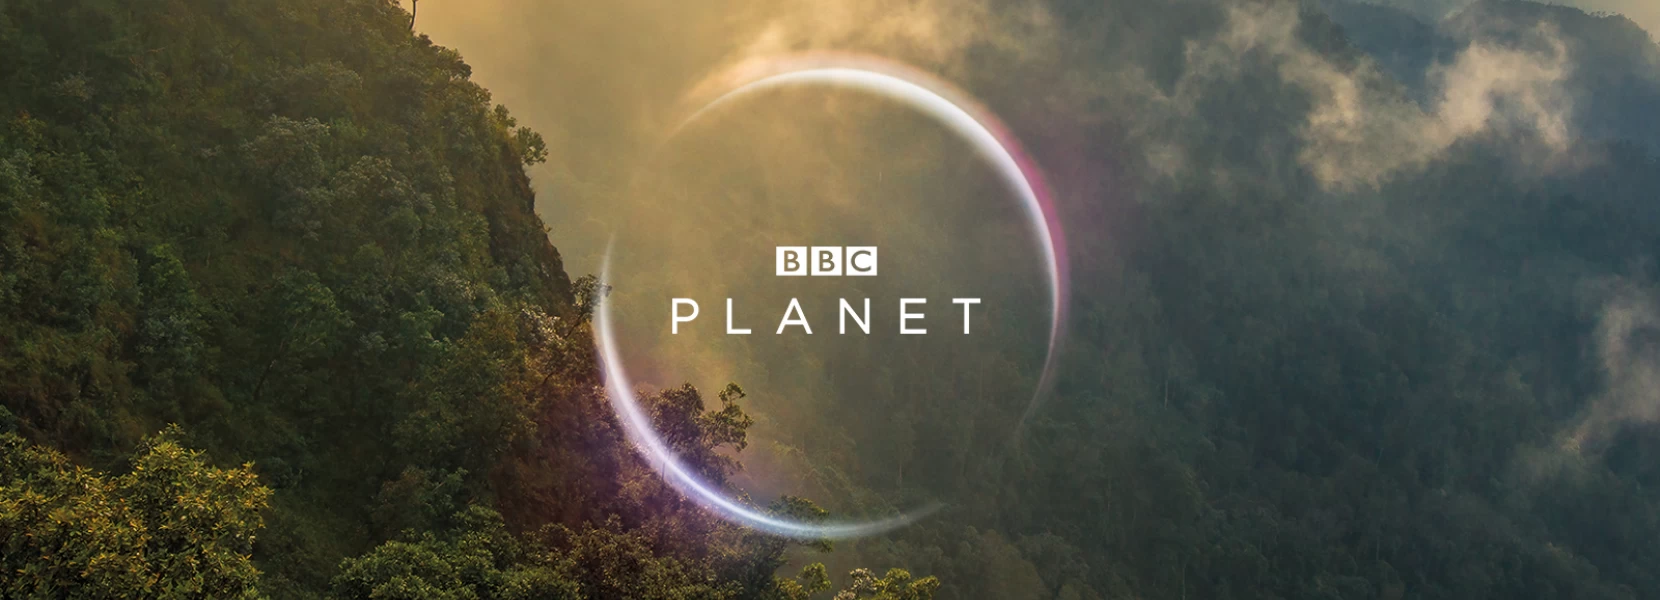 BBC Studios объявляет о партнерстве с телеканалом «Пятница!» в рамках франшизы BBC Planet